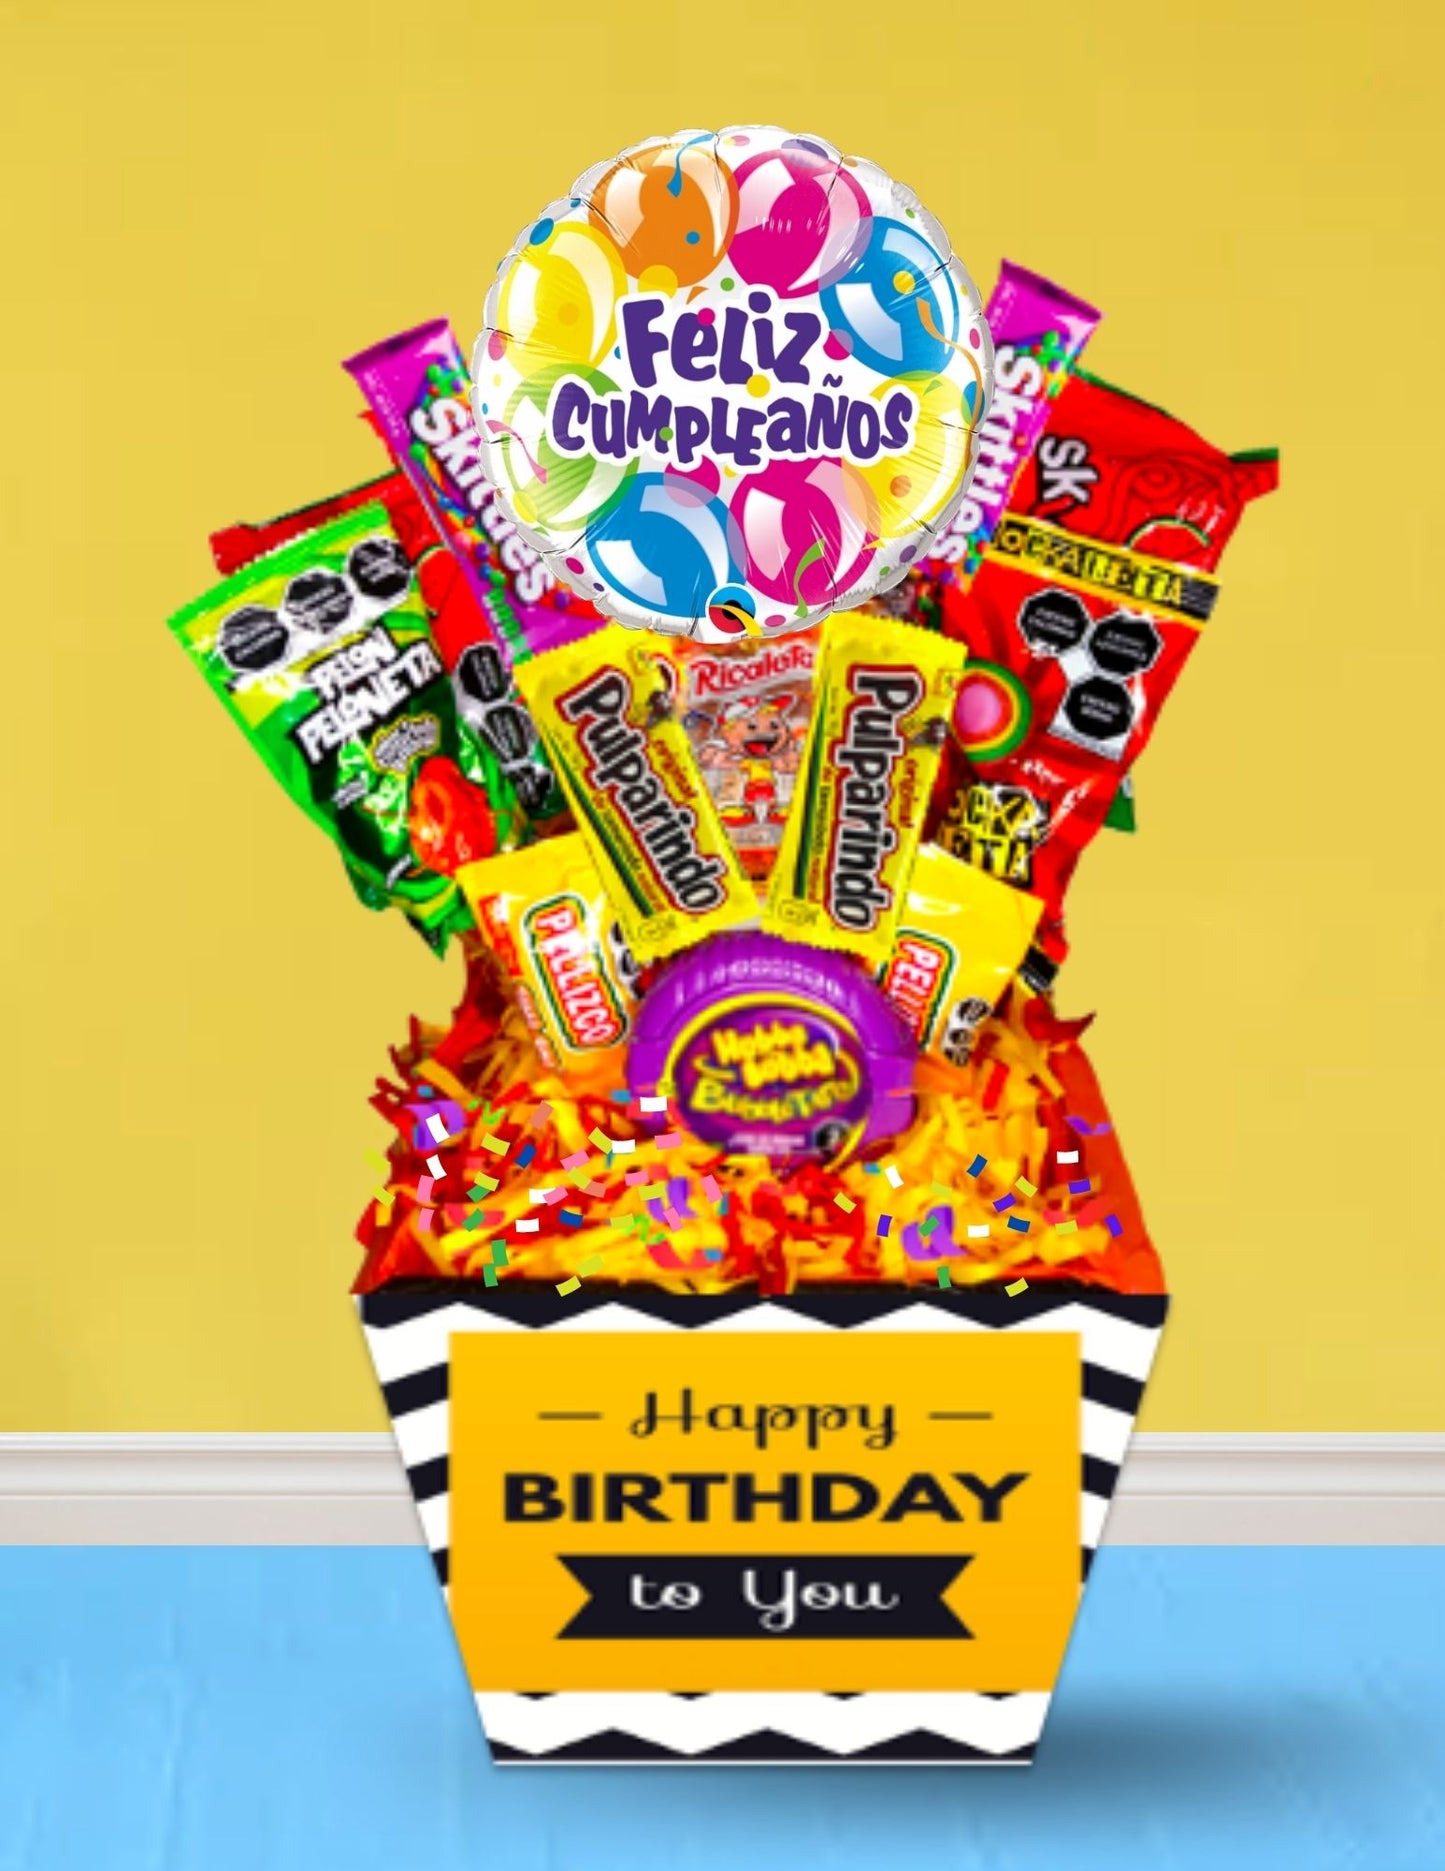 regalo de cumpleaños economico para hombres regalo sorpresa dulces chicles dulces picositos sorpresa de cumpleaños para novios